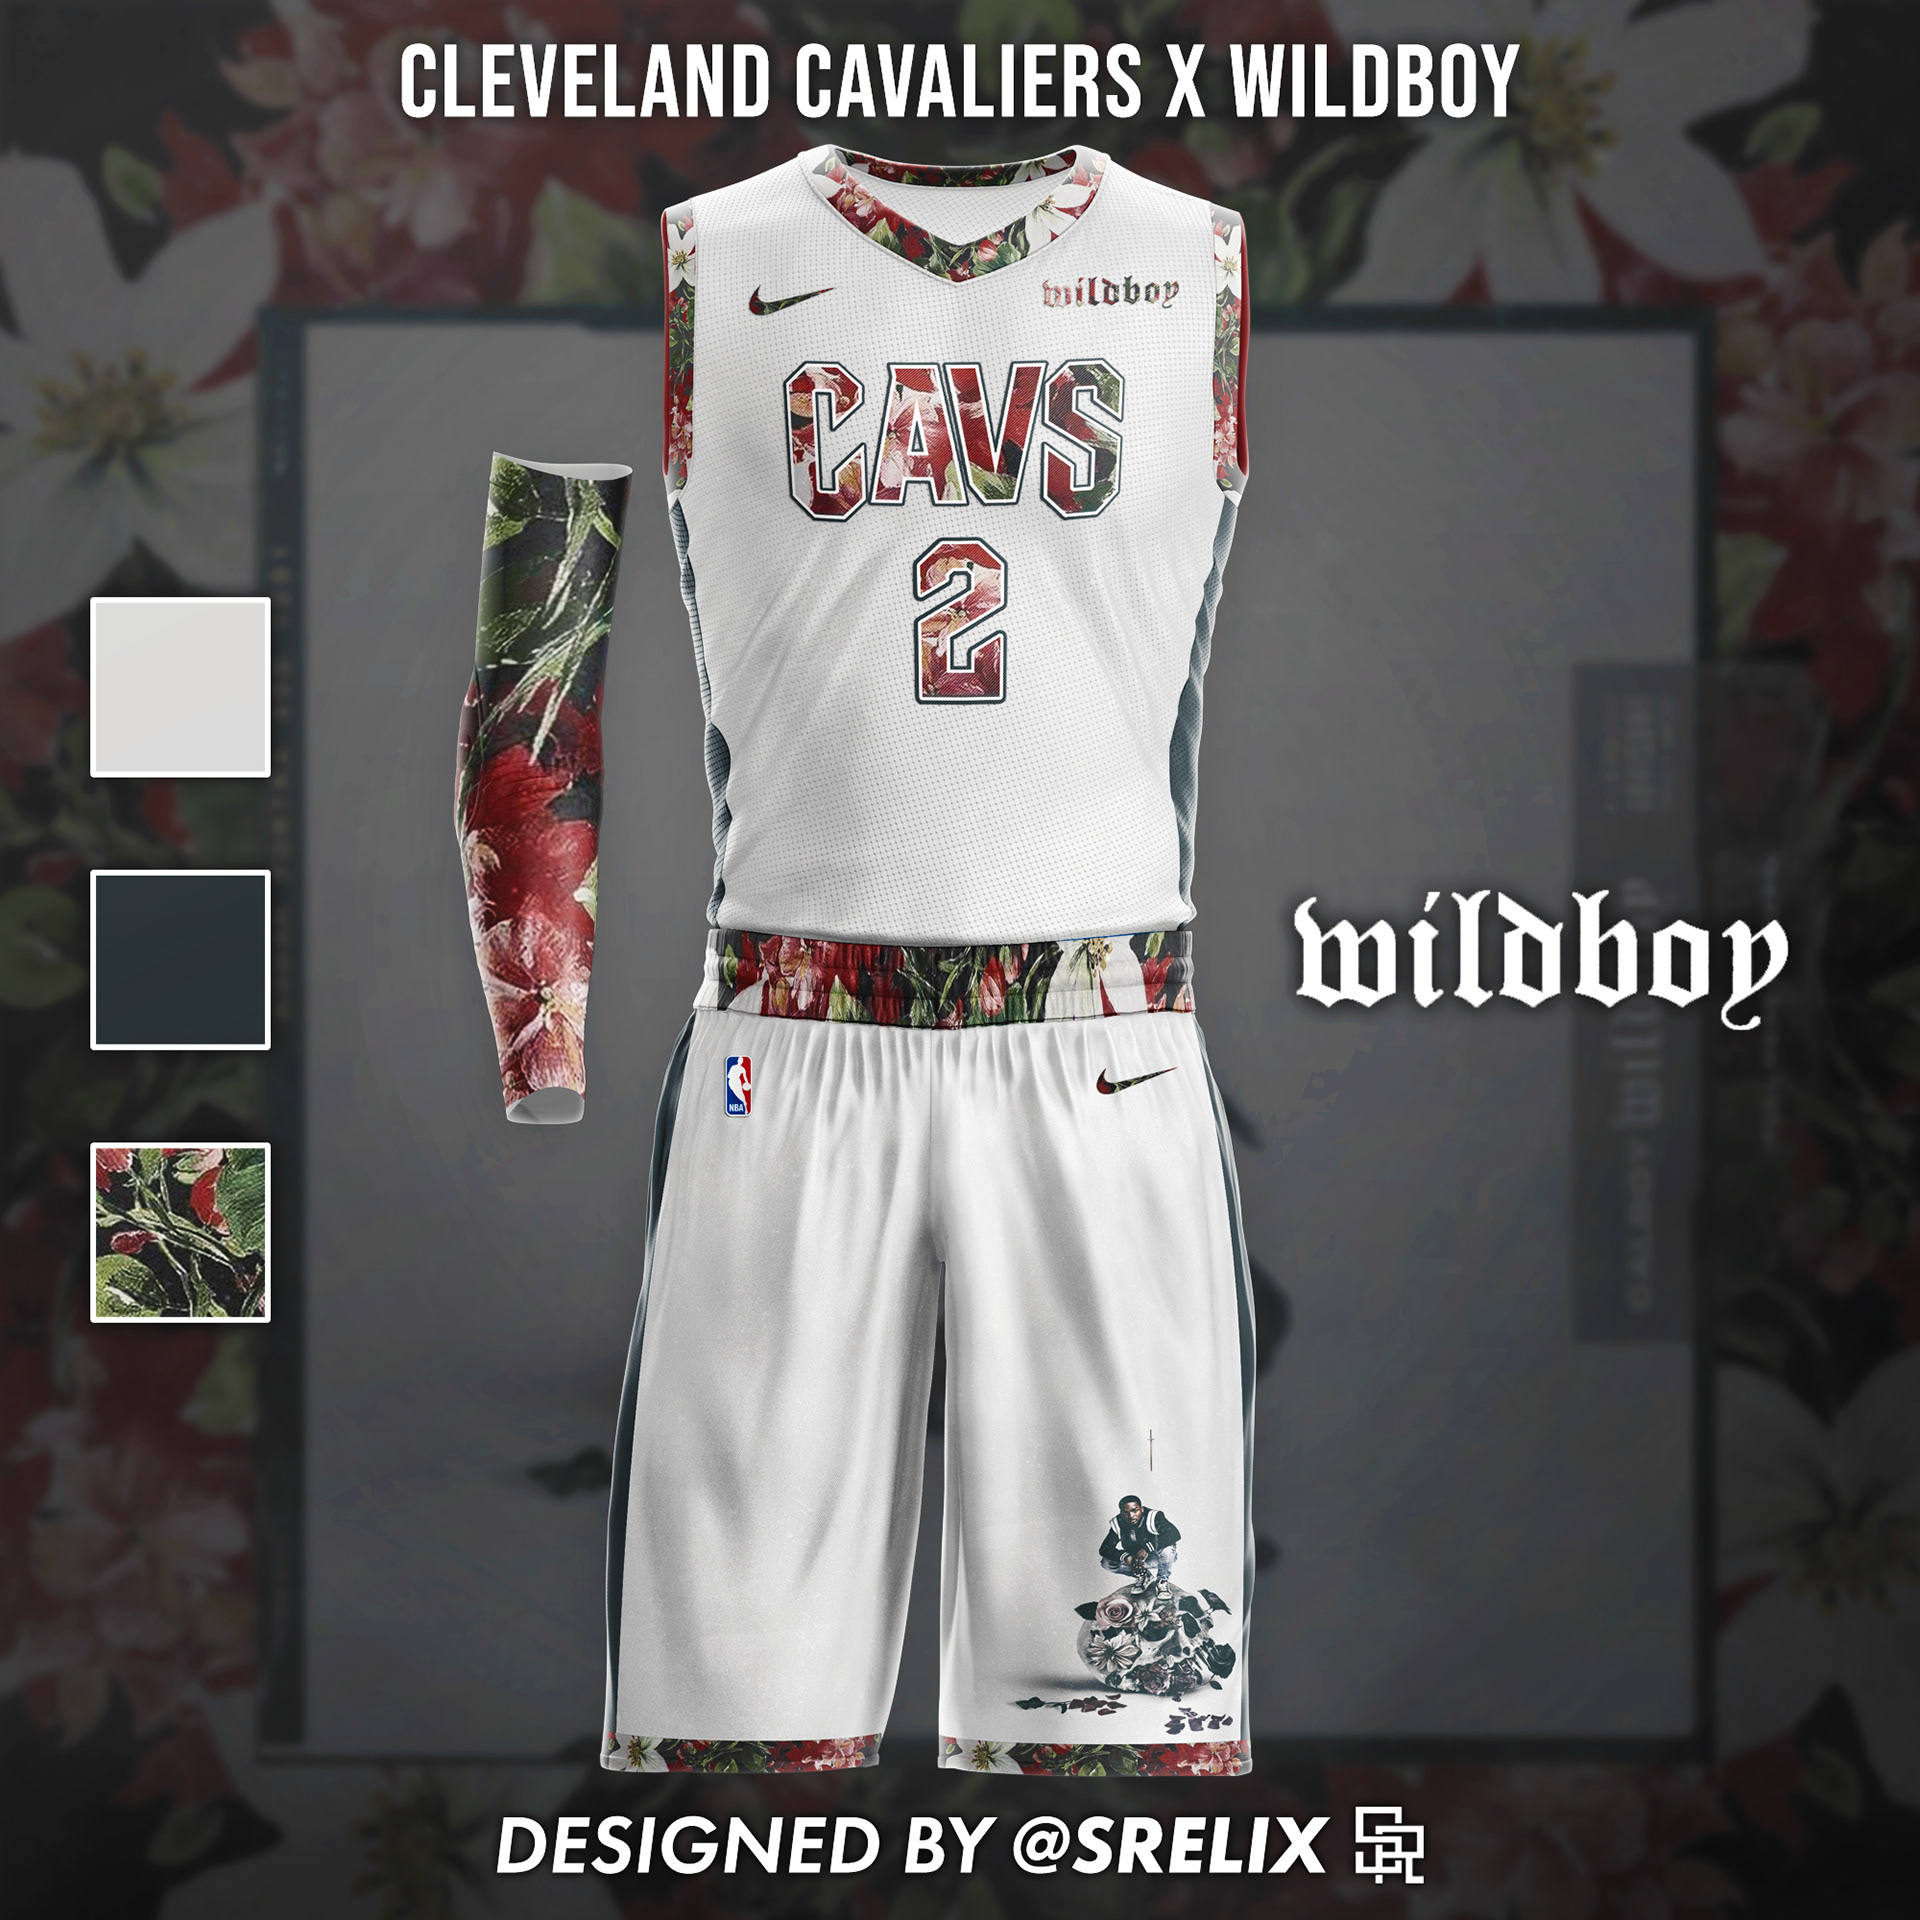 I (@srelix on Instagram) designed an NBA x Hip-Hop jersey for all